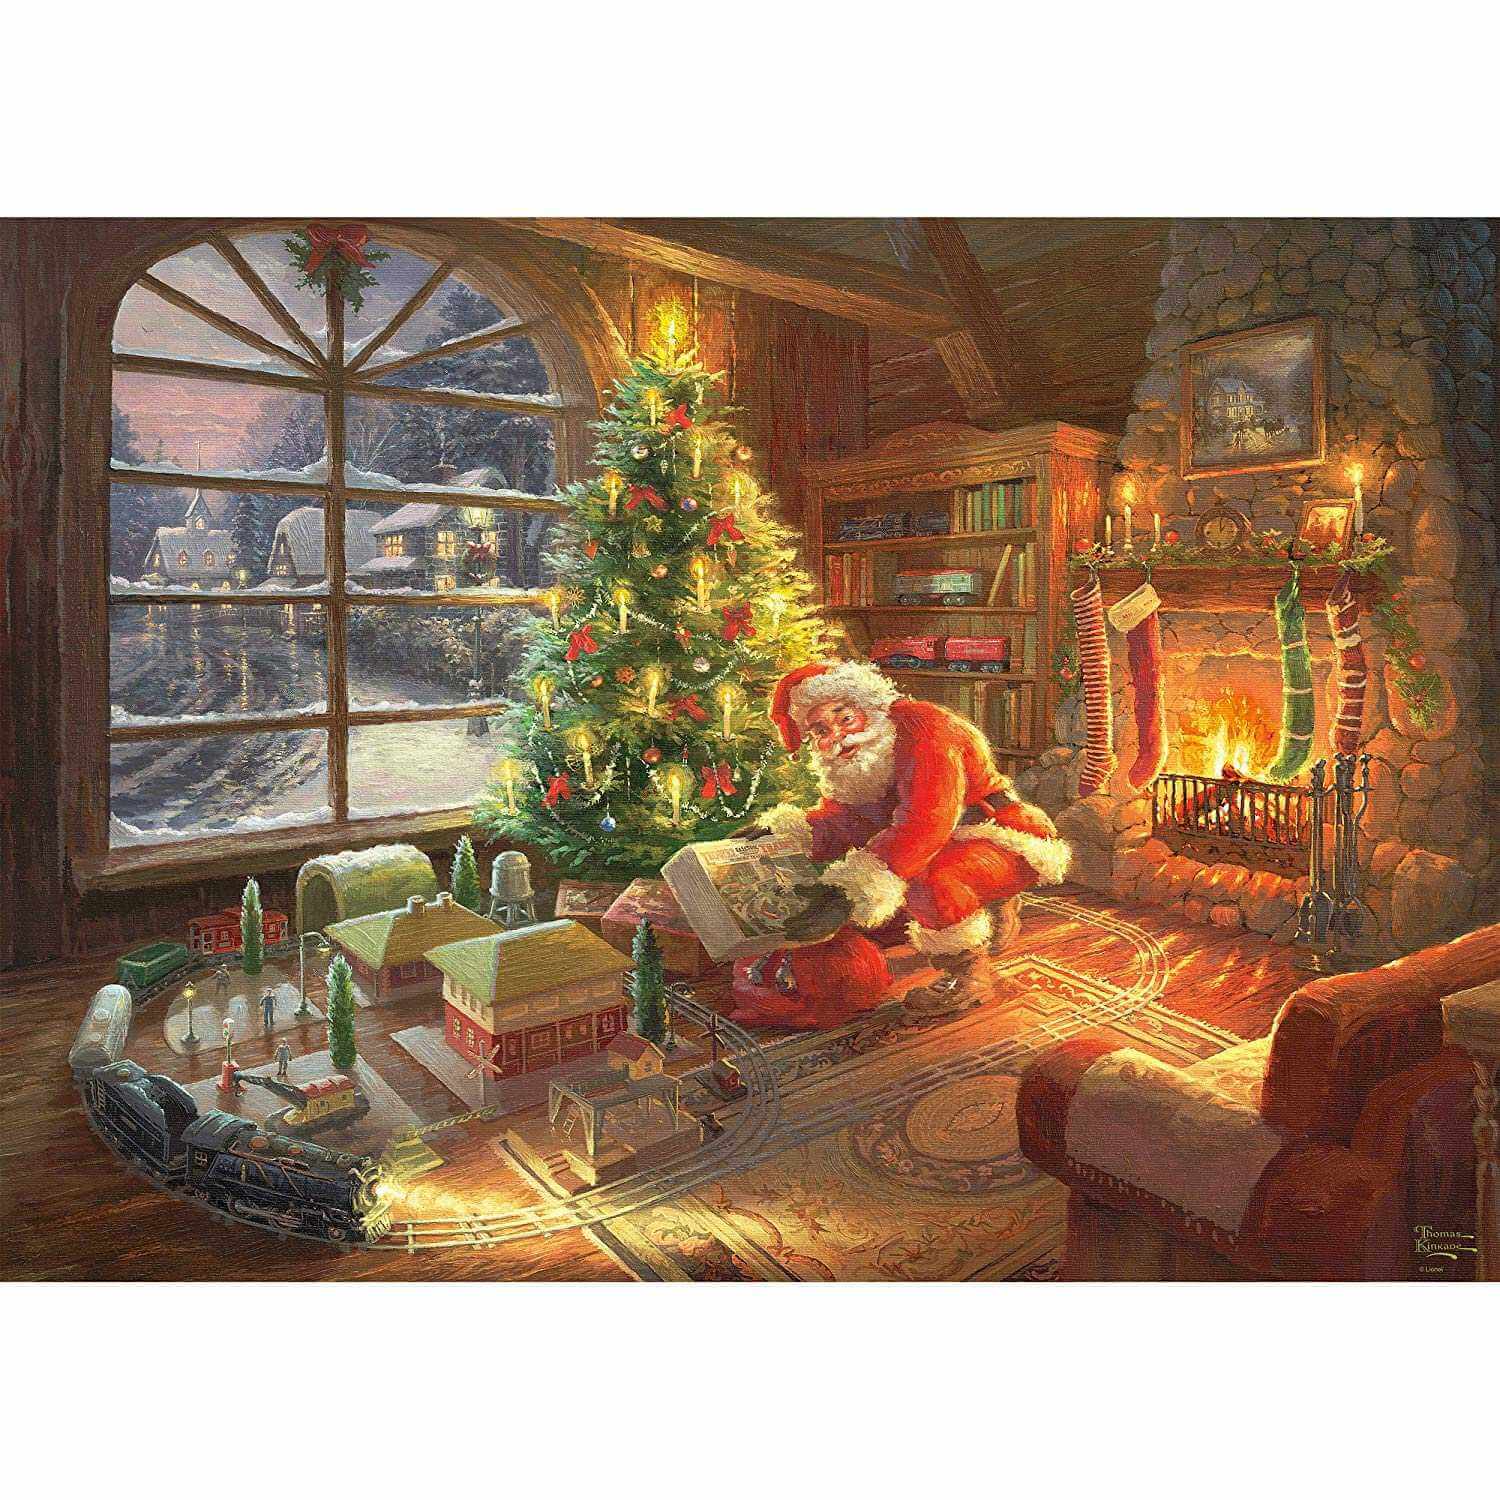 Route de Noël - Le temps des puzzles festifs ! 🎄